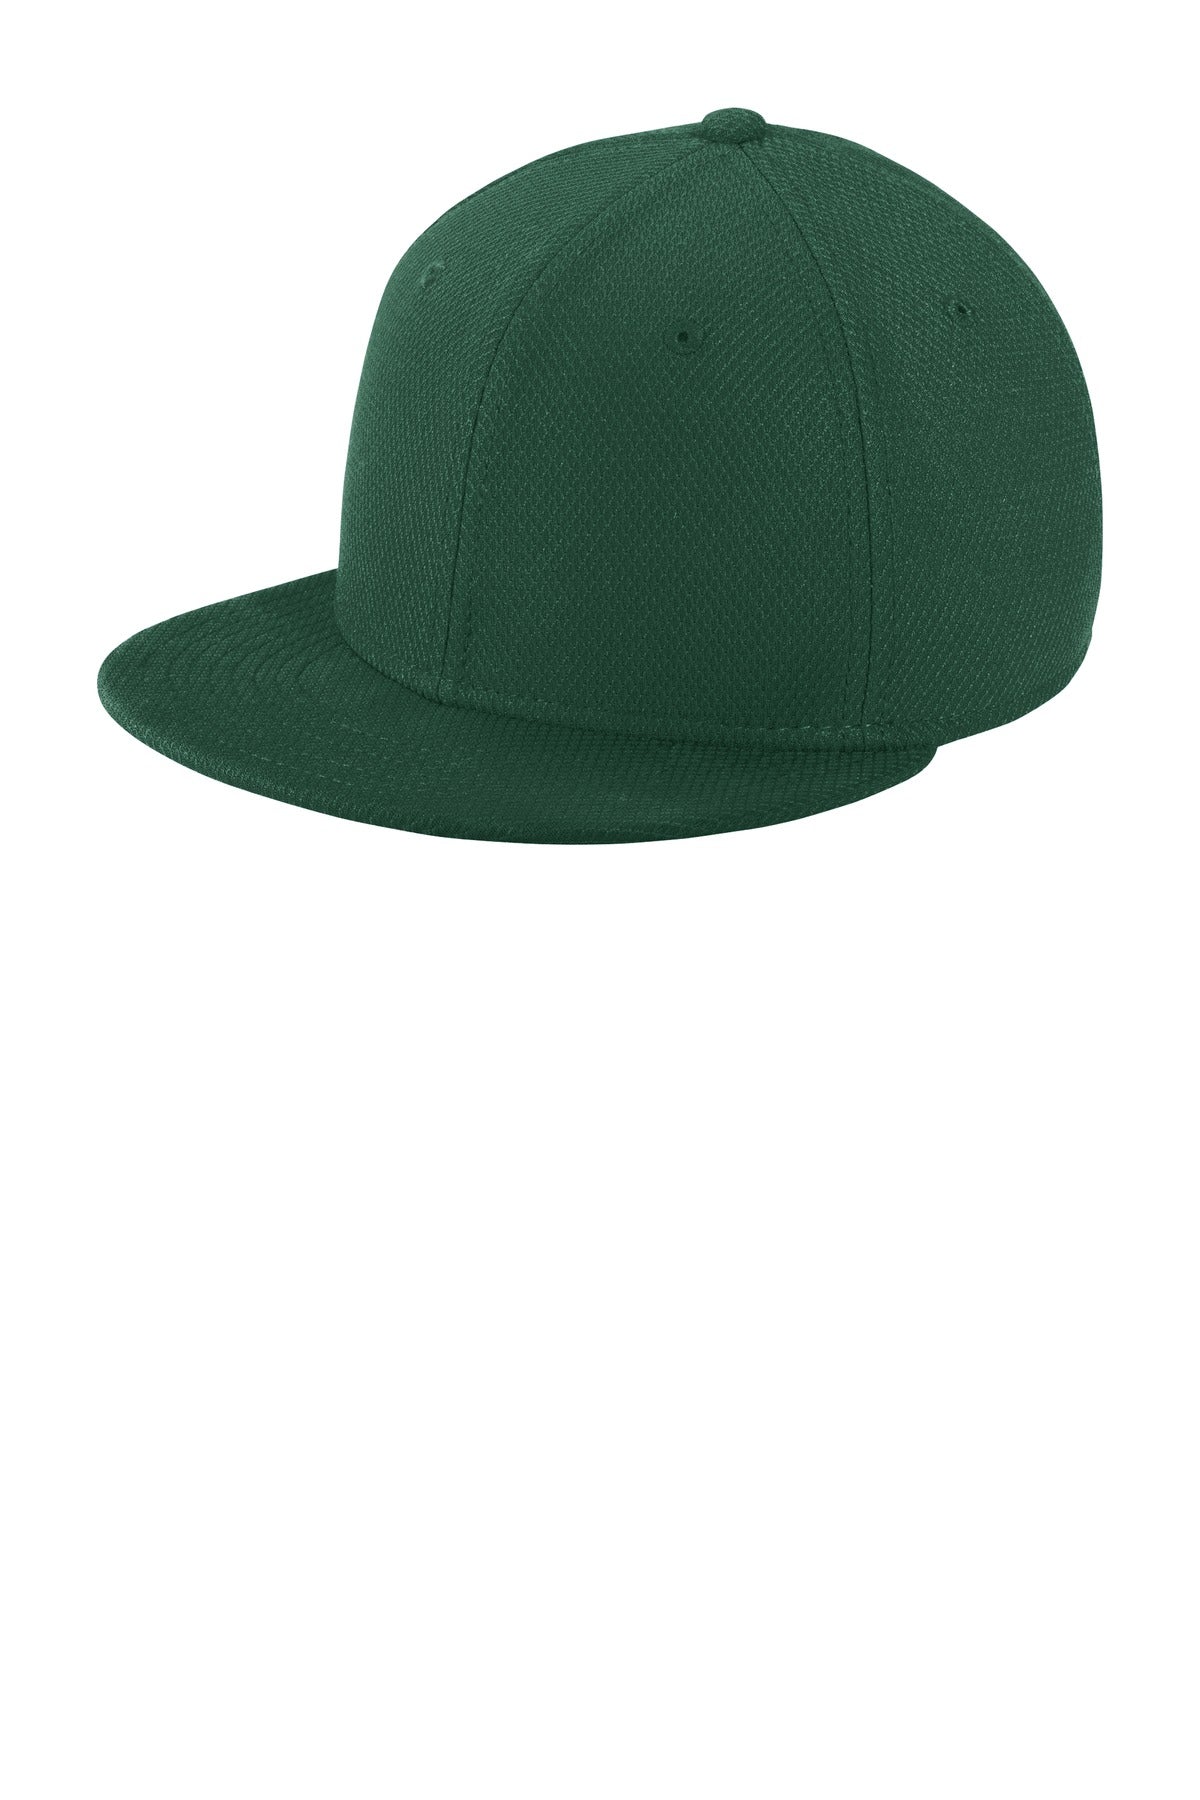 Caps Dark Green OSFA New Era